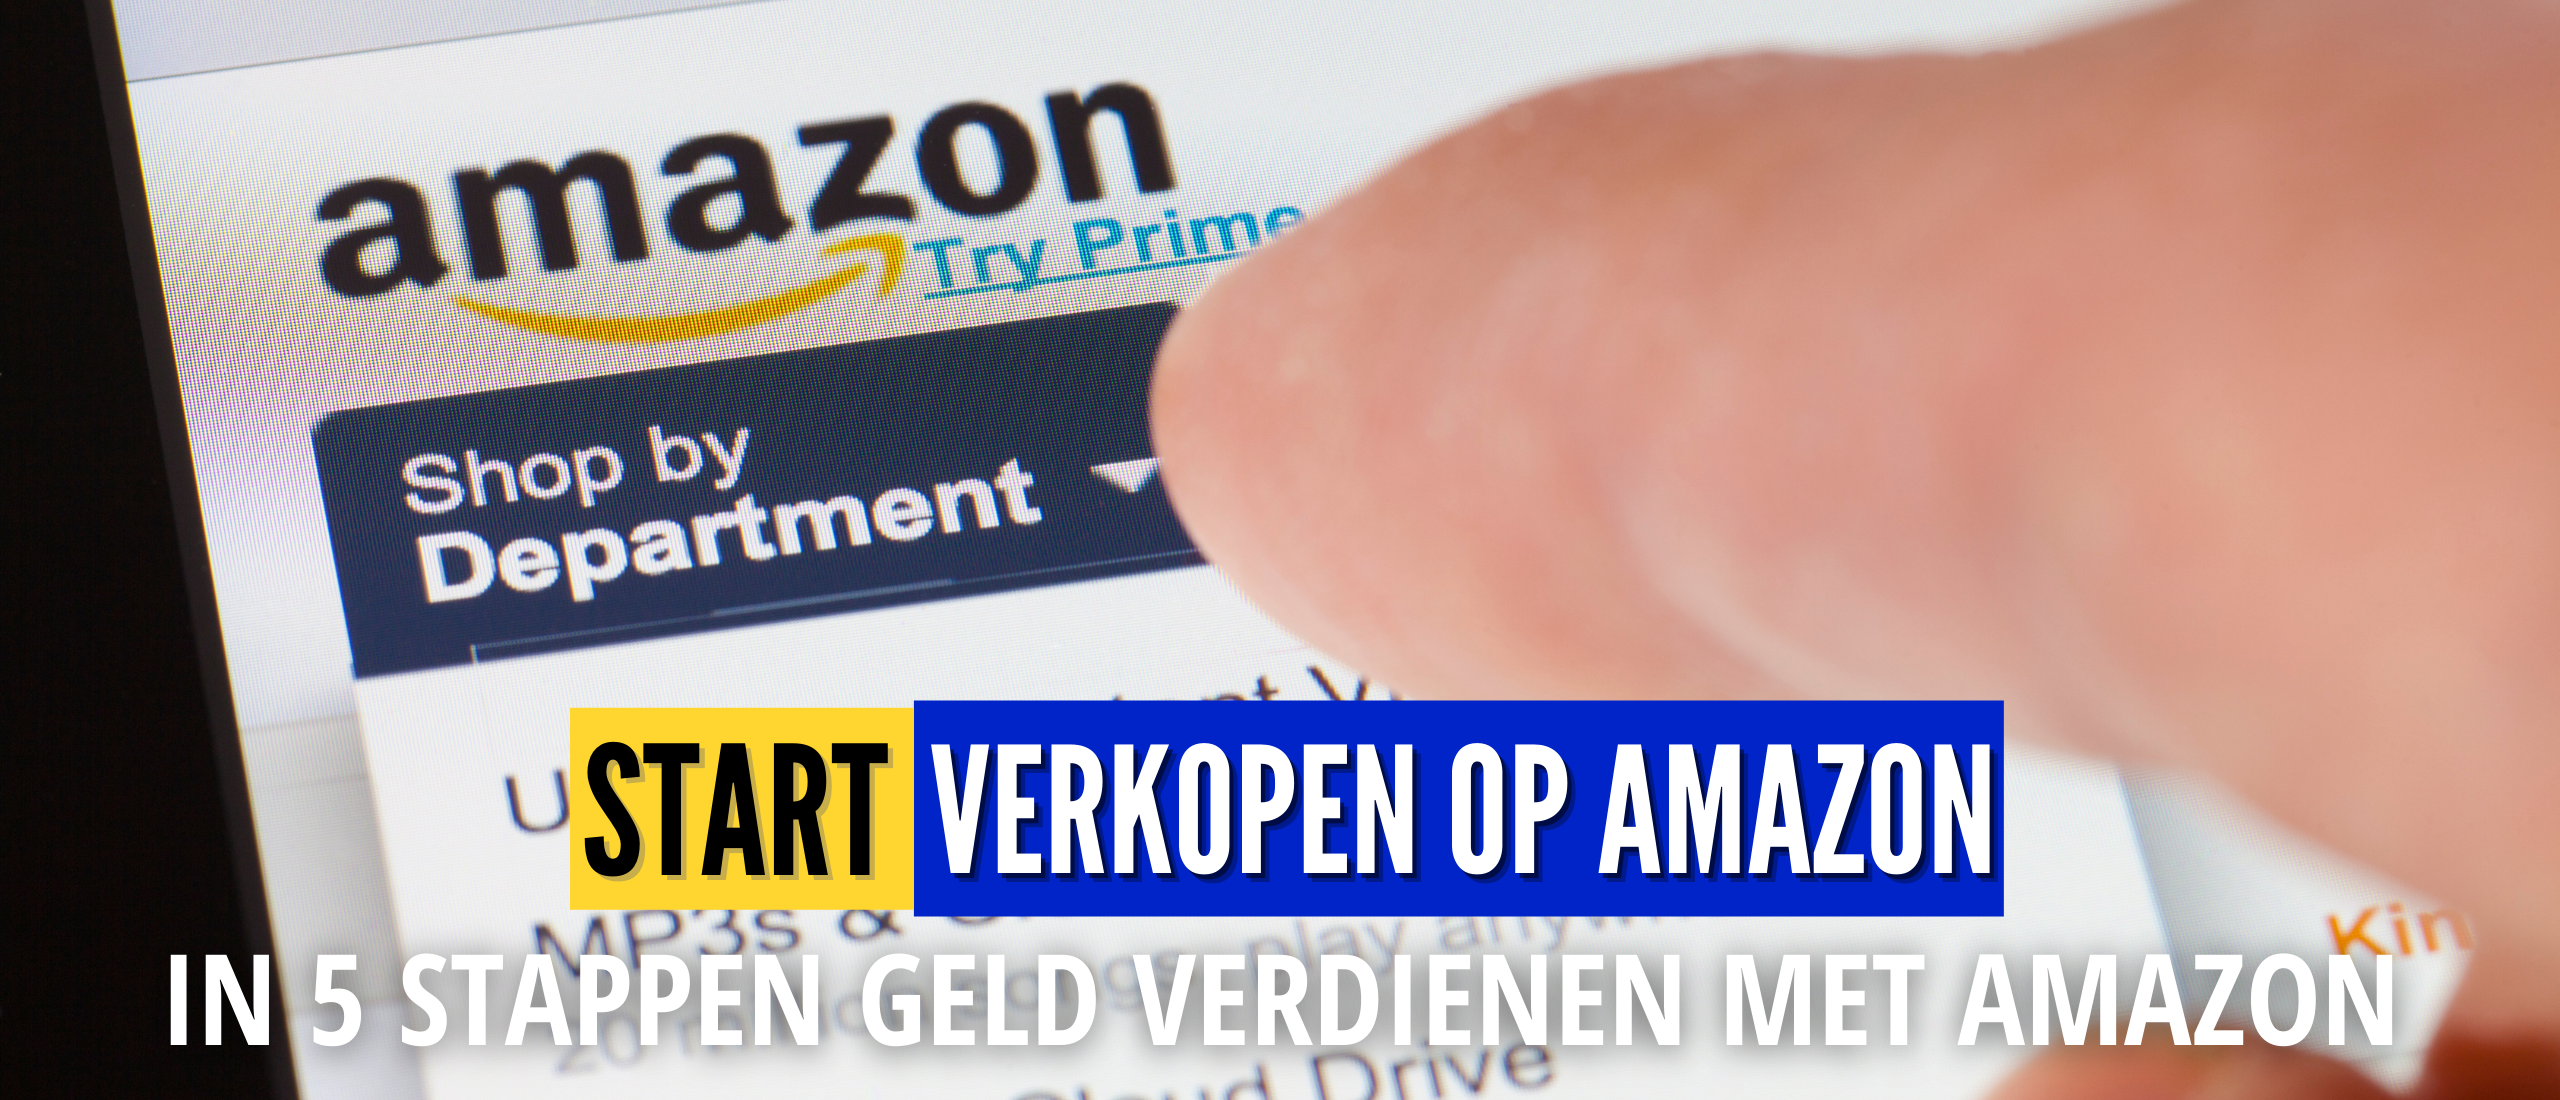 Geld Verdienen op Amazon in 5 Stappen | Direct Beginnen, Handleiding en Tips